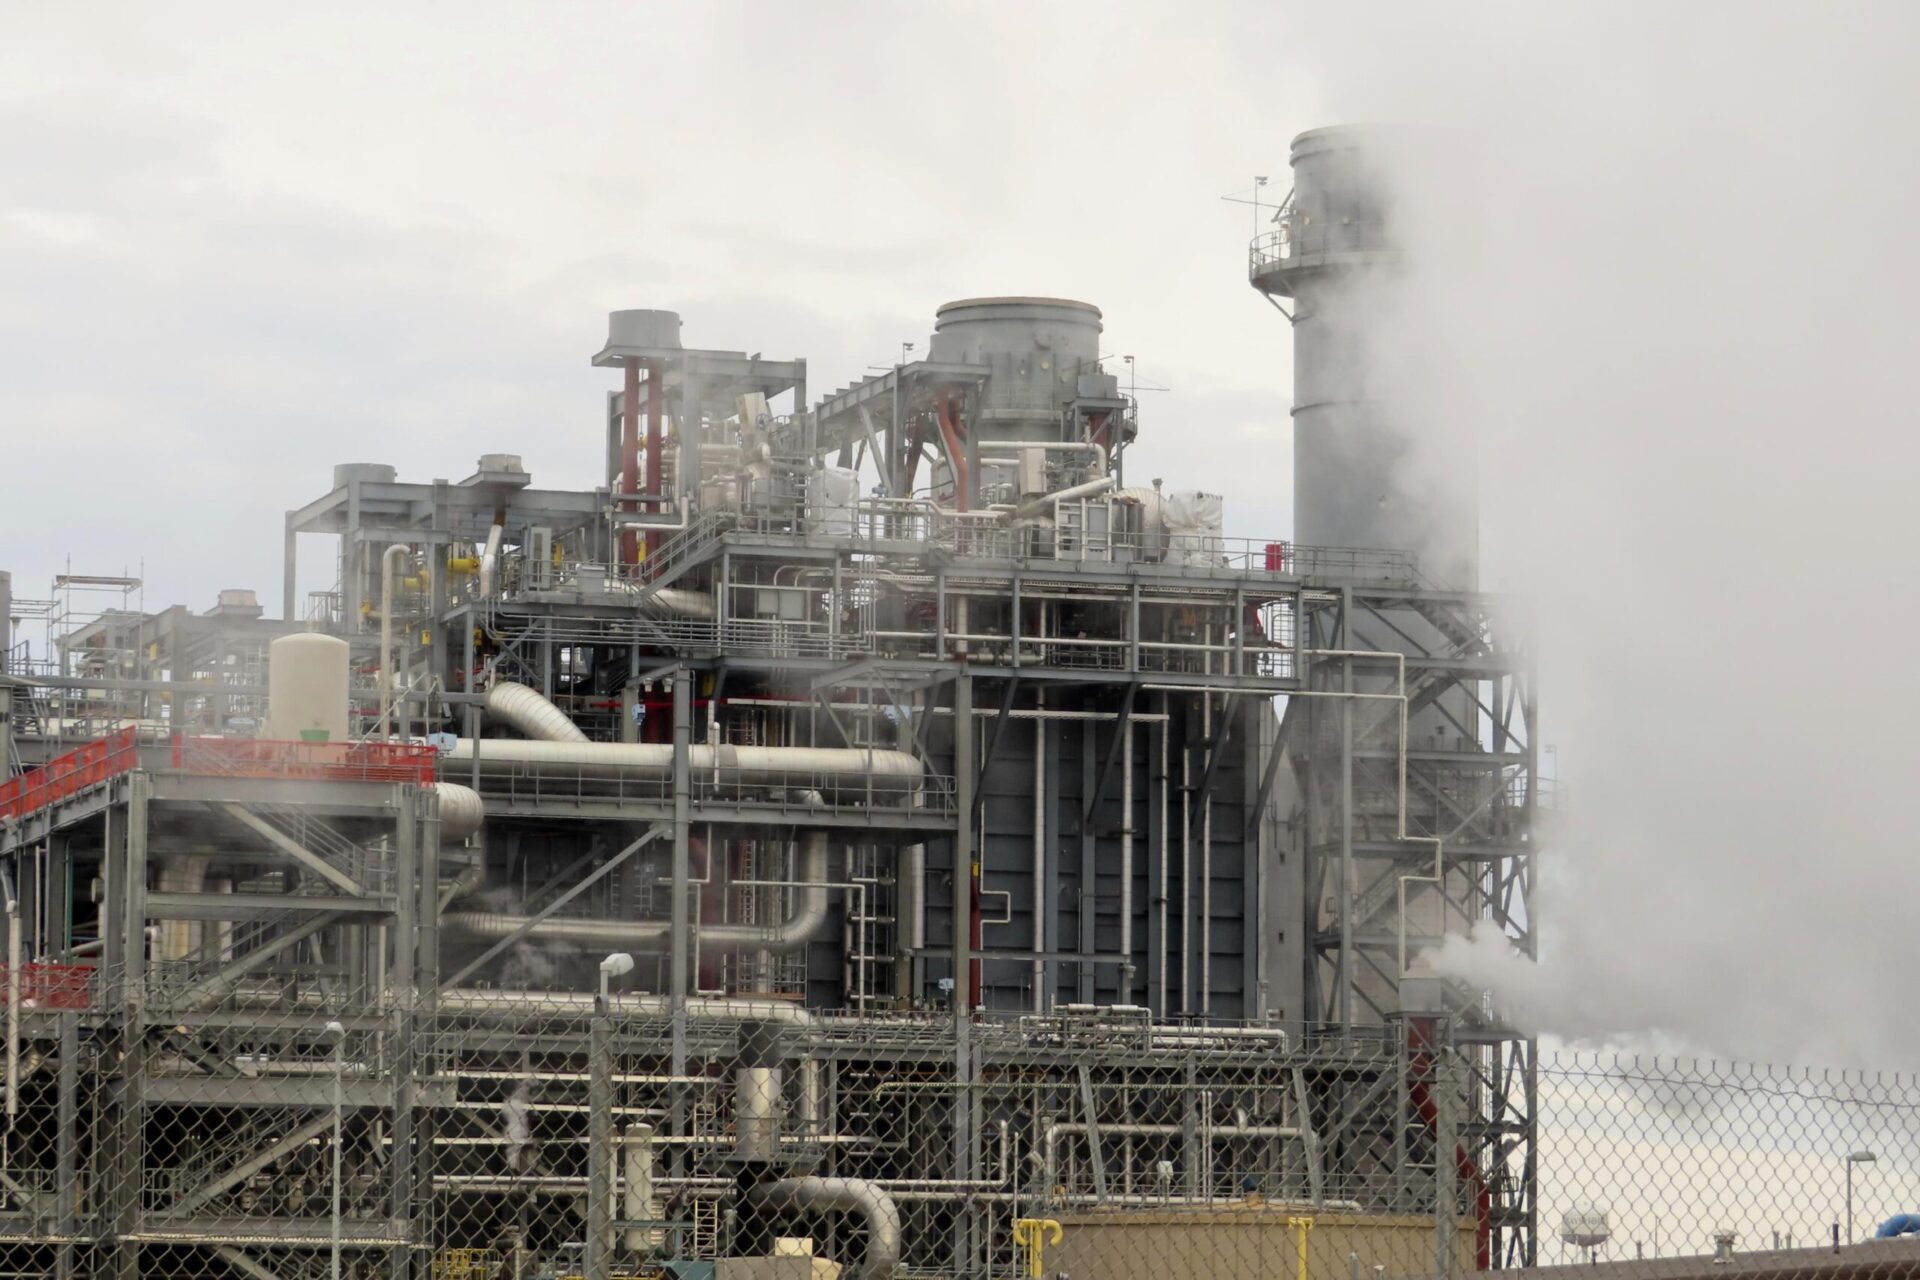 ‘Basta de contaminación’ en área de minorías en vista de planta de energía de NJ